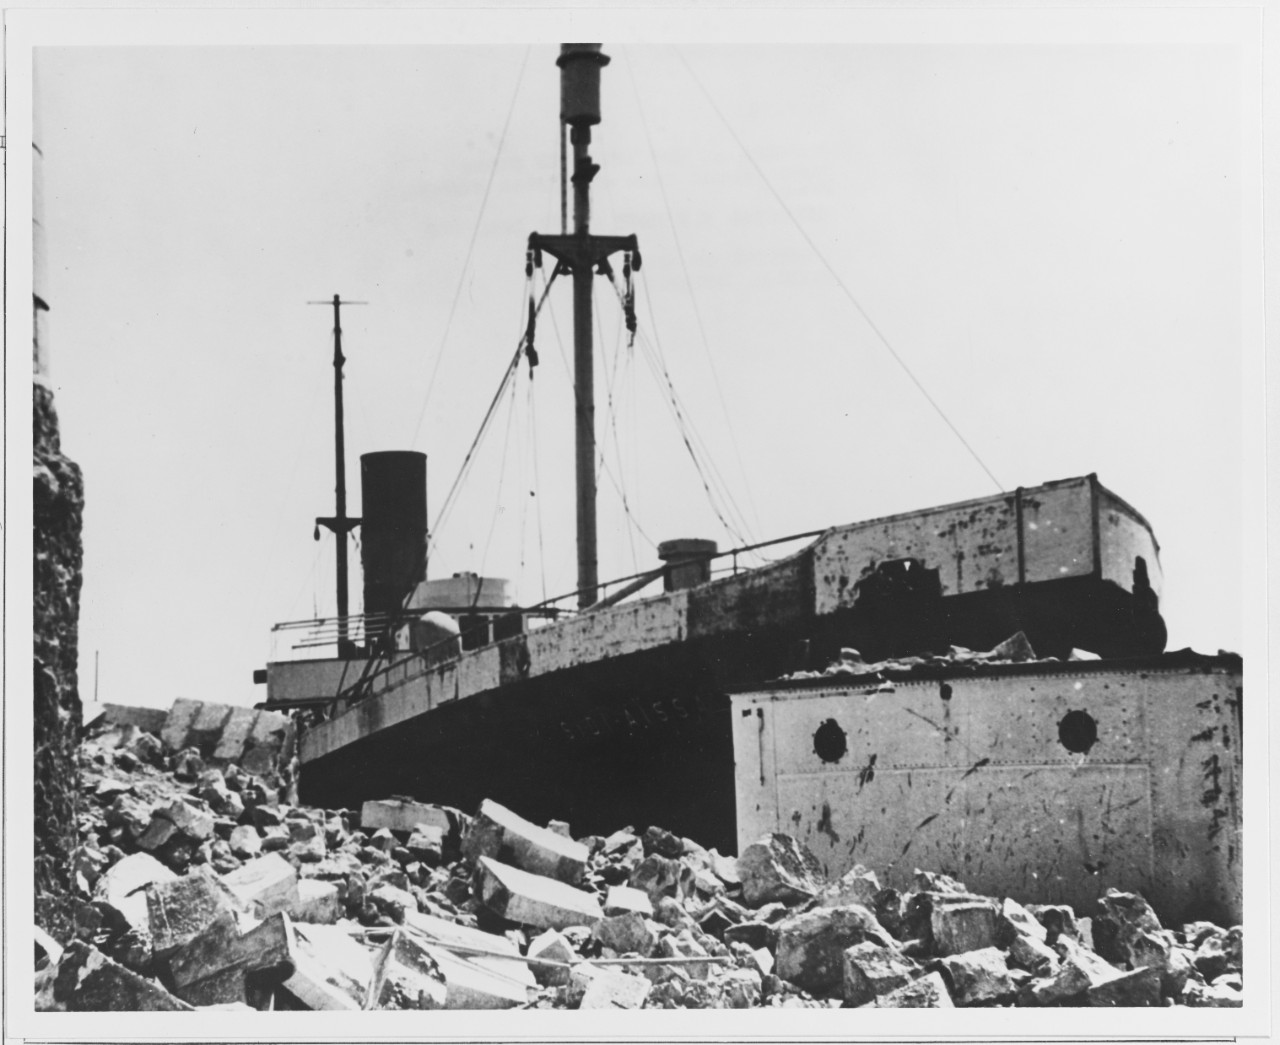 Results of USS ENDICOTT shore bombardment fire at Ciotat Harbor, France